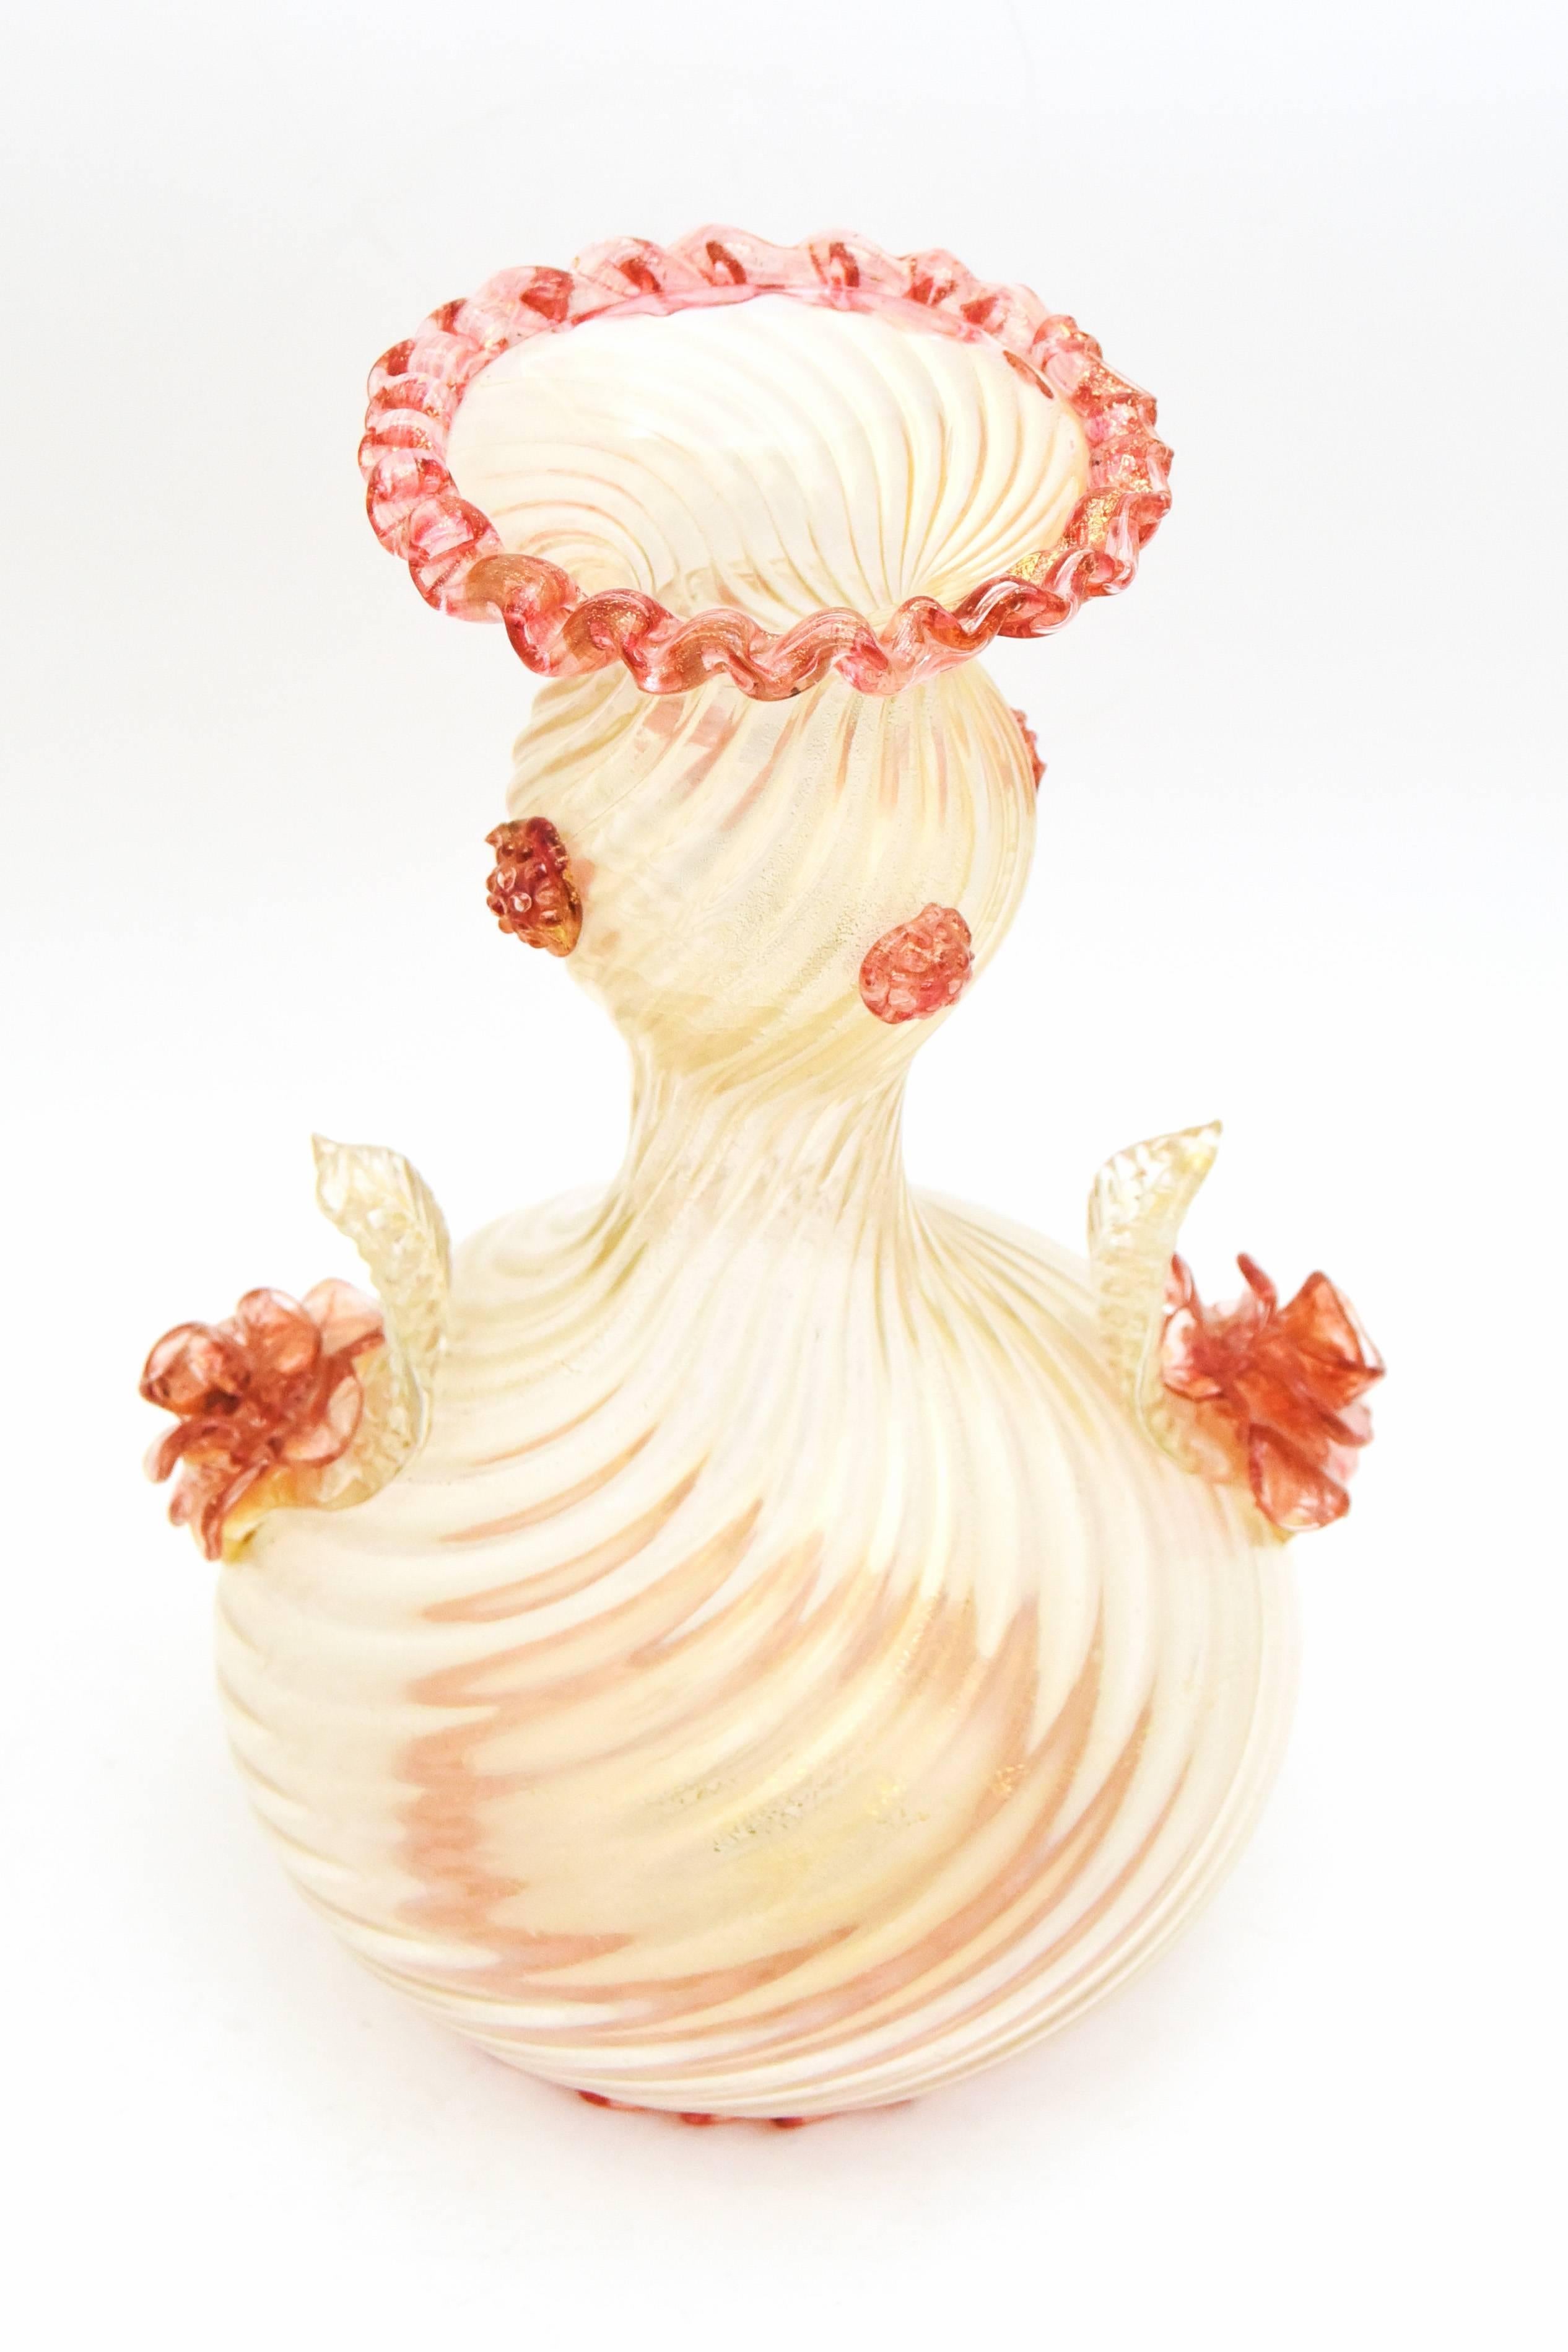 Il s'agit d'un grand vase vénitien de Murano, soufflé à la main, inhabituel, en verre strié infusé de feuilles d'or. Fabriqué par Barovier e Toso, il est orné de roses appliquées et d'une garniture rose assortie à la base et à l'ouverture, ainsi que